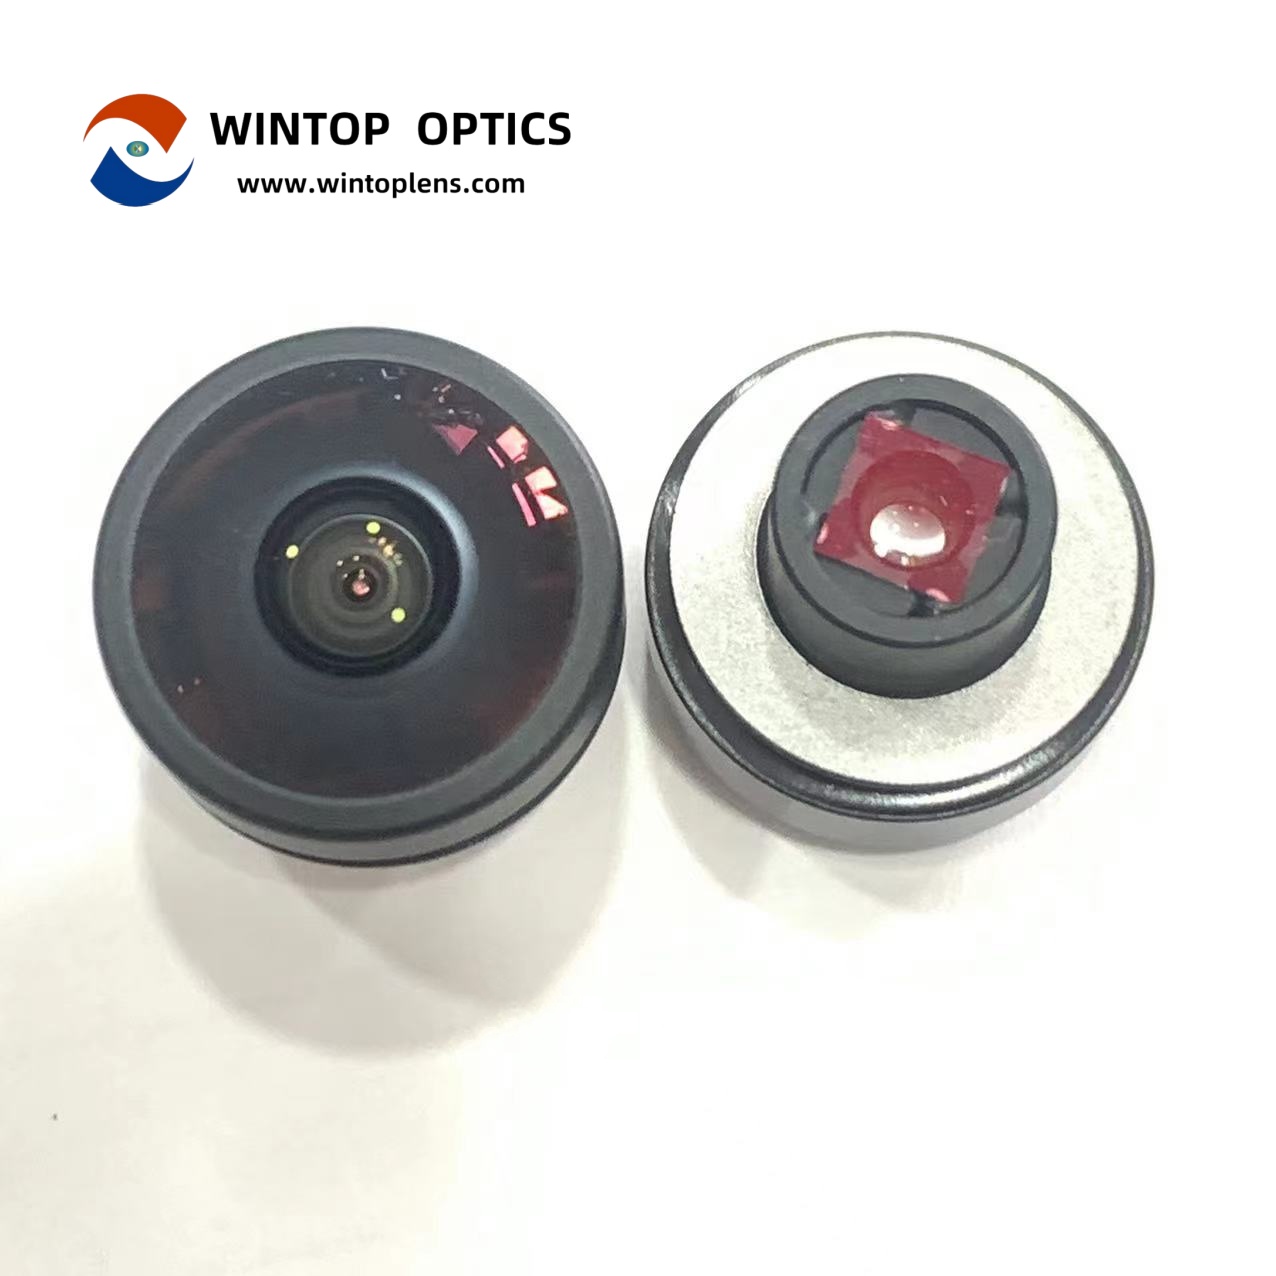 Lente de câmera retrovisora panorâmica HFOV de 200 graus YT-7070-H1-A - WINTOP OPTICS